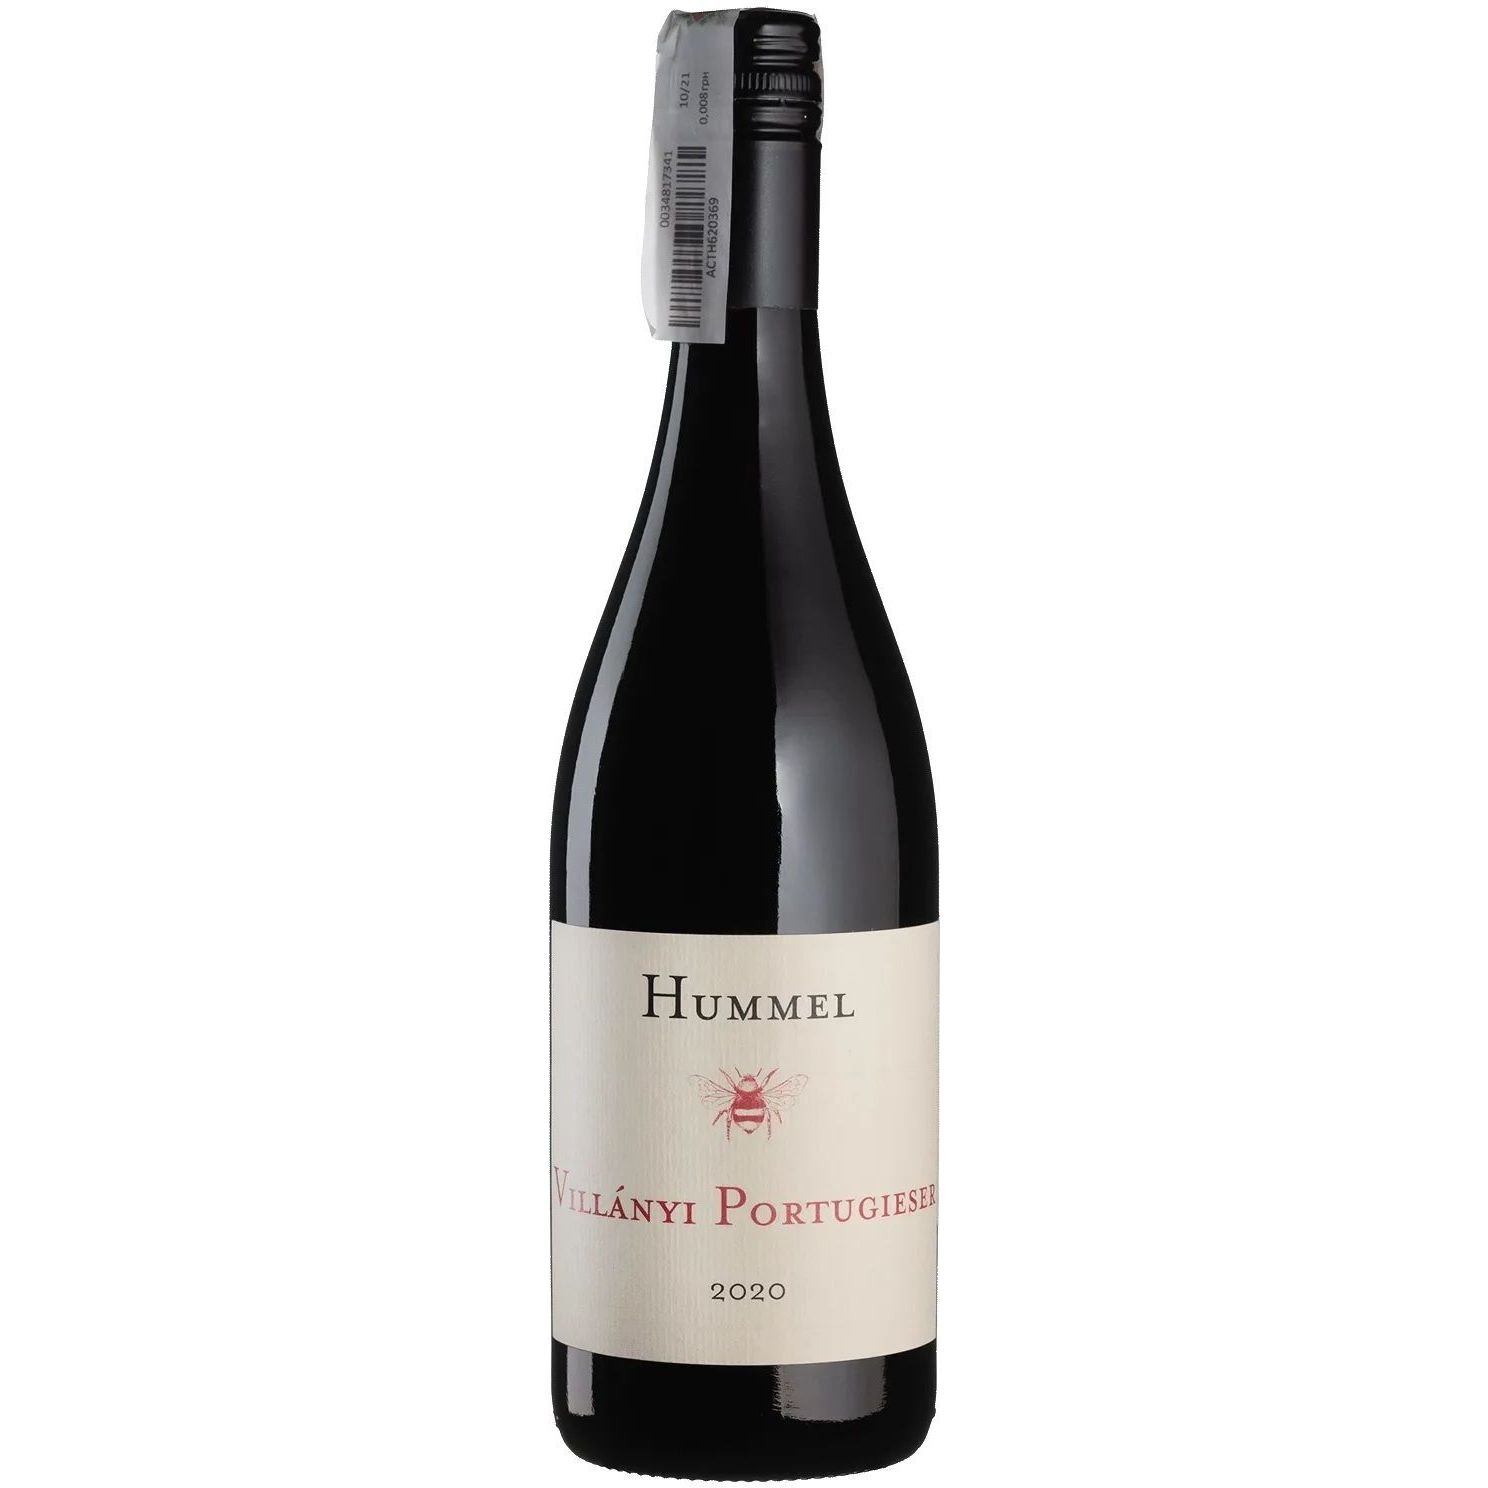 Вино Hummel Villanyi Portugieser 2020 красное сухое 0.75 л - фото 1